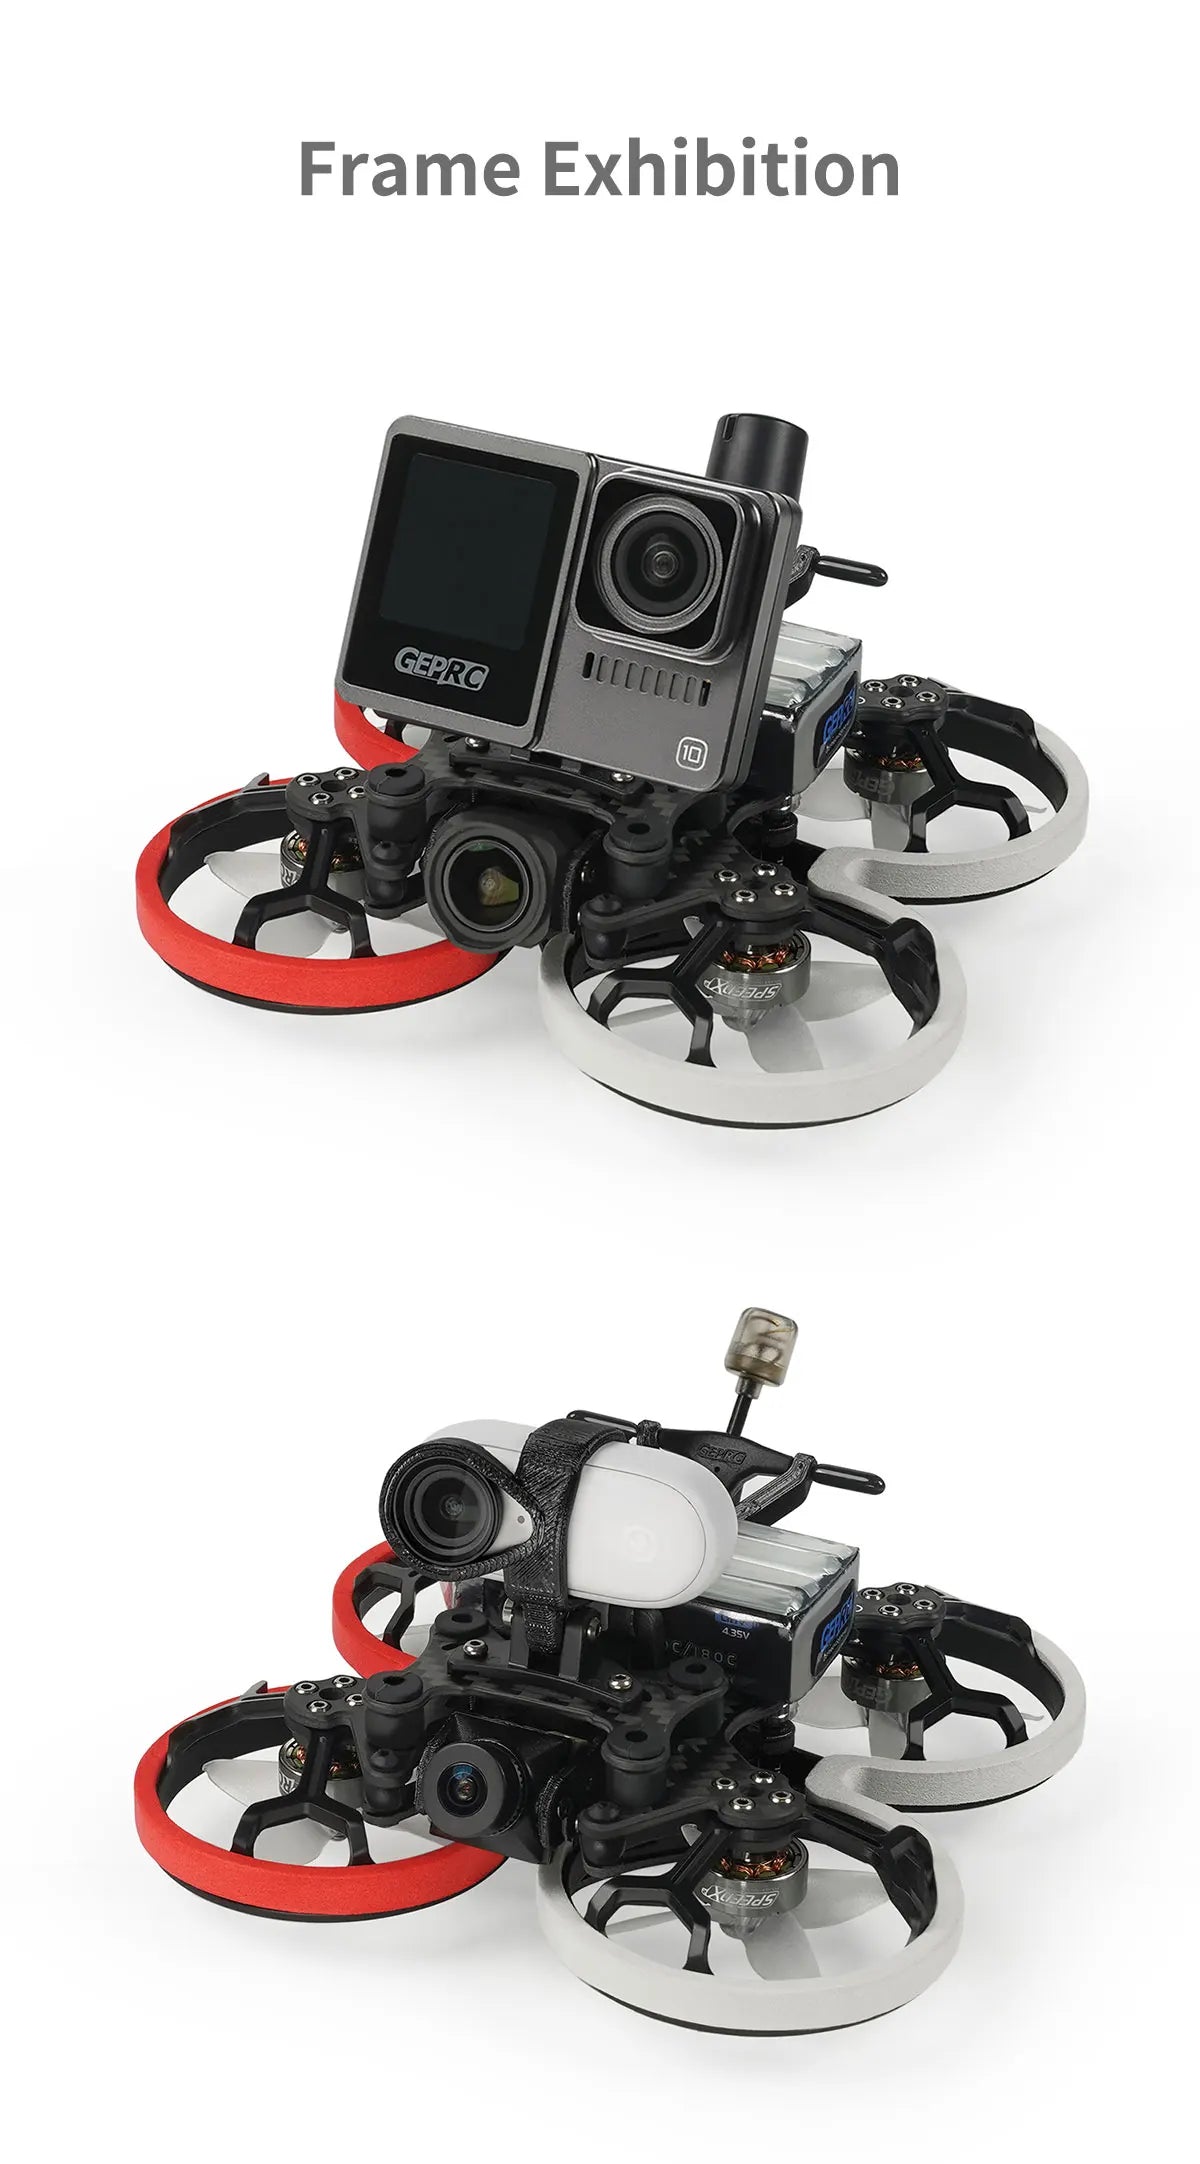 GEPRC Cinelog20 Analog FPV Drone, Frame Exhibition 435v '0 € GEPRO '